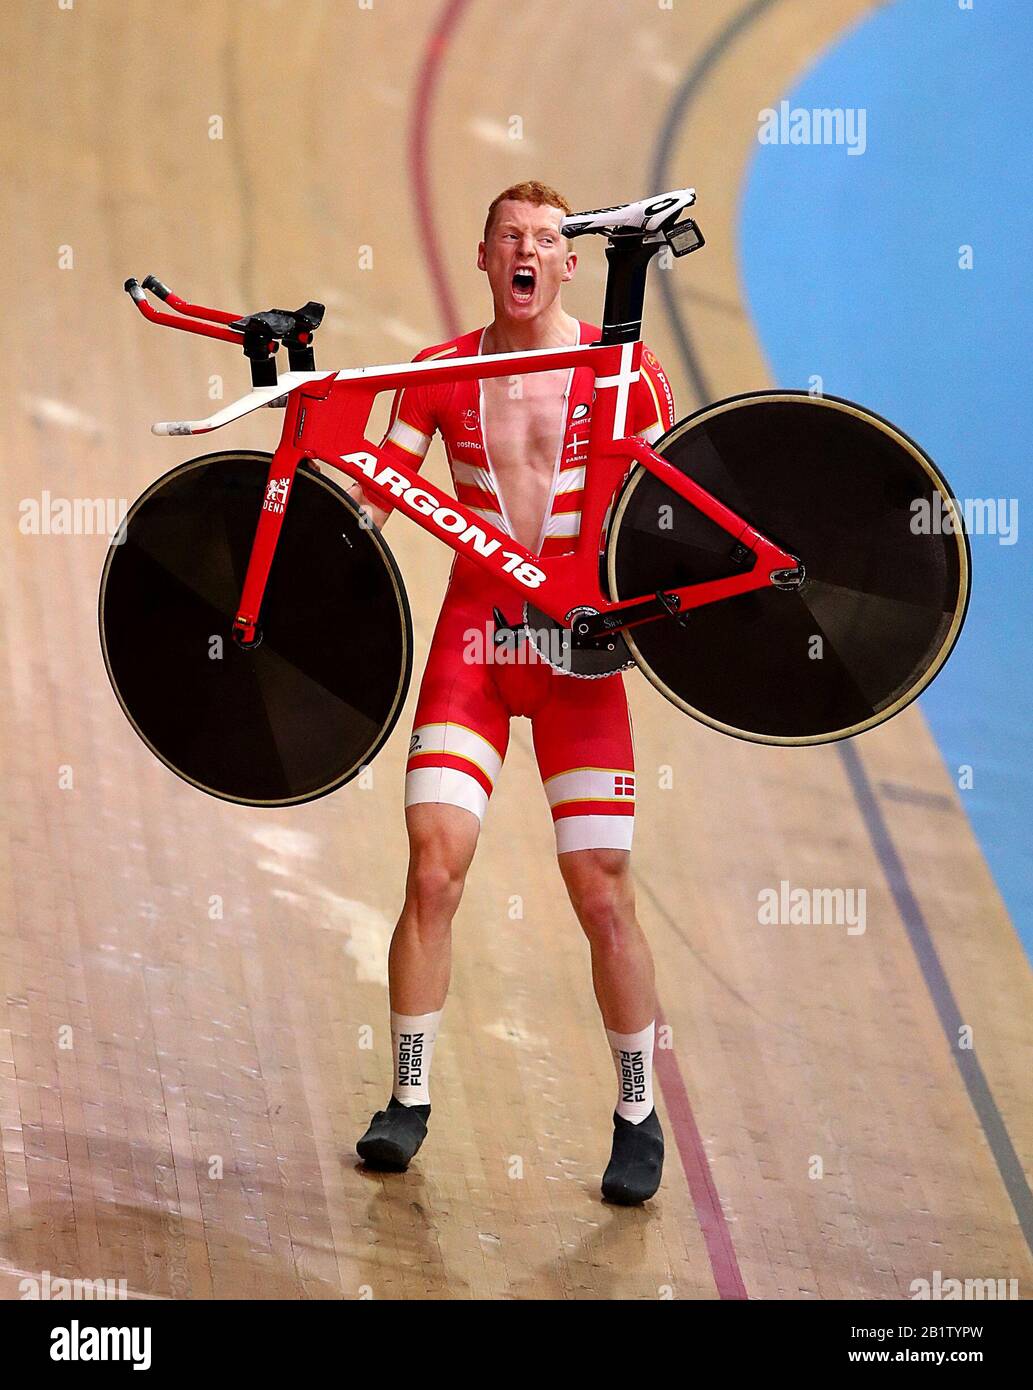 Der dänische Frederik Madsen feiert am zweiten Tag der Rennradweltmeisterschaften 2020 im Velodrom, Berlin, Gold in der Mannschaftsverfolgung Der Männer. Stockfoto